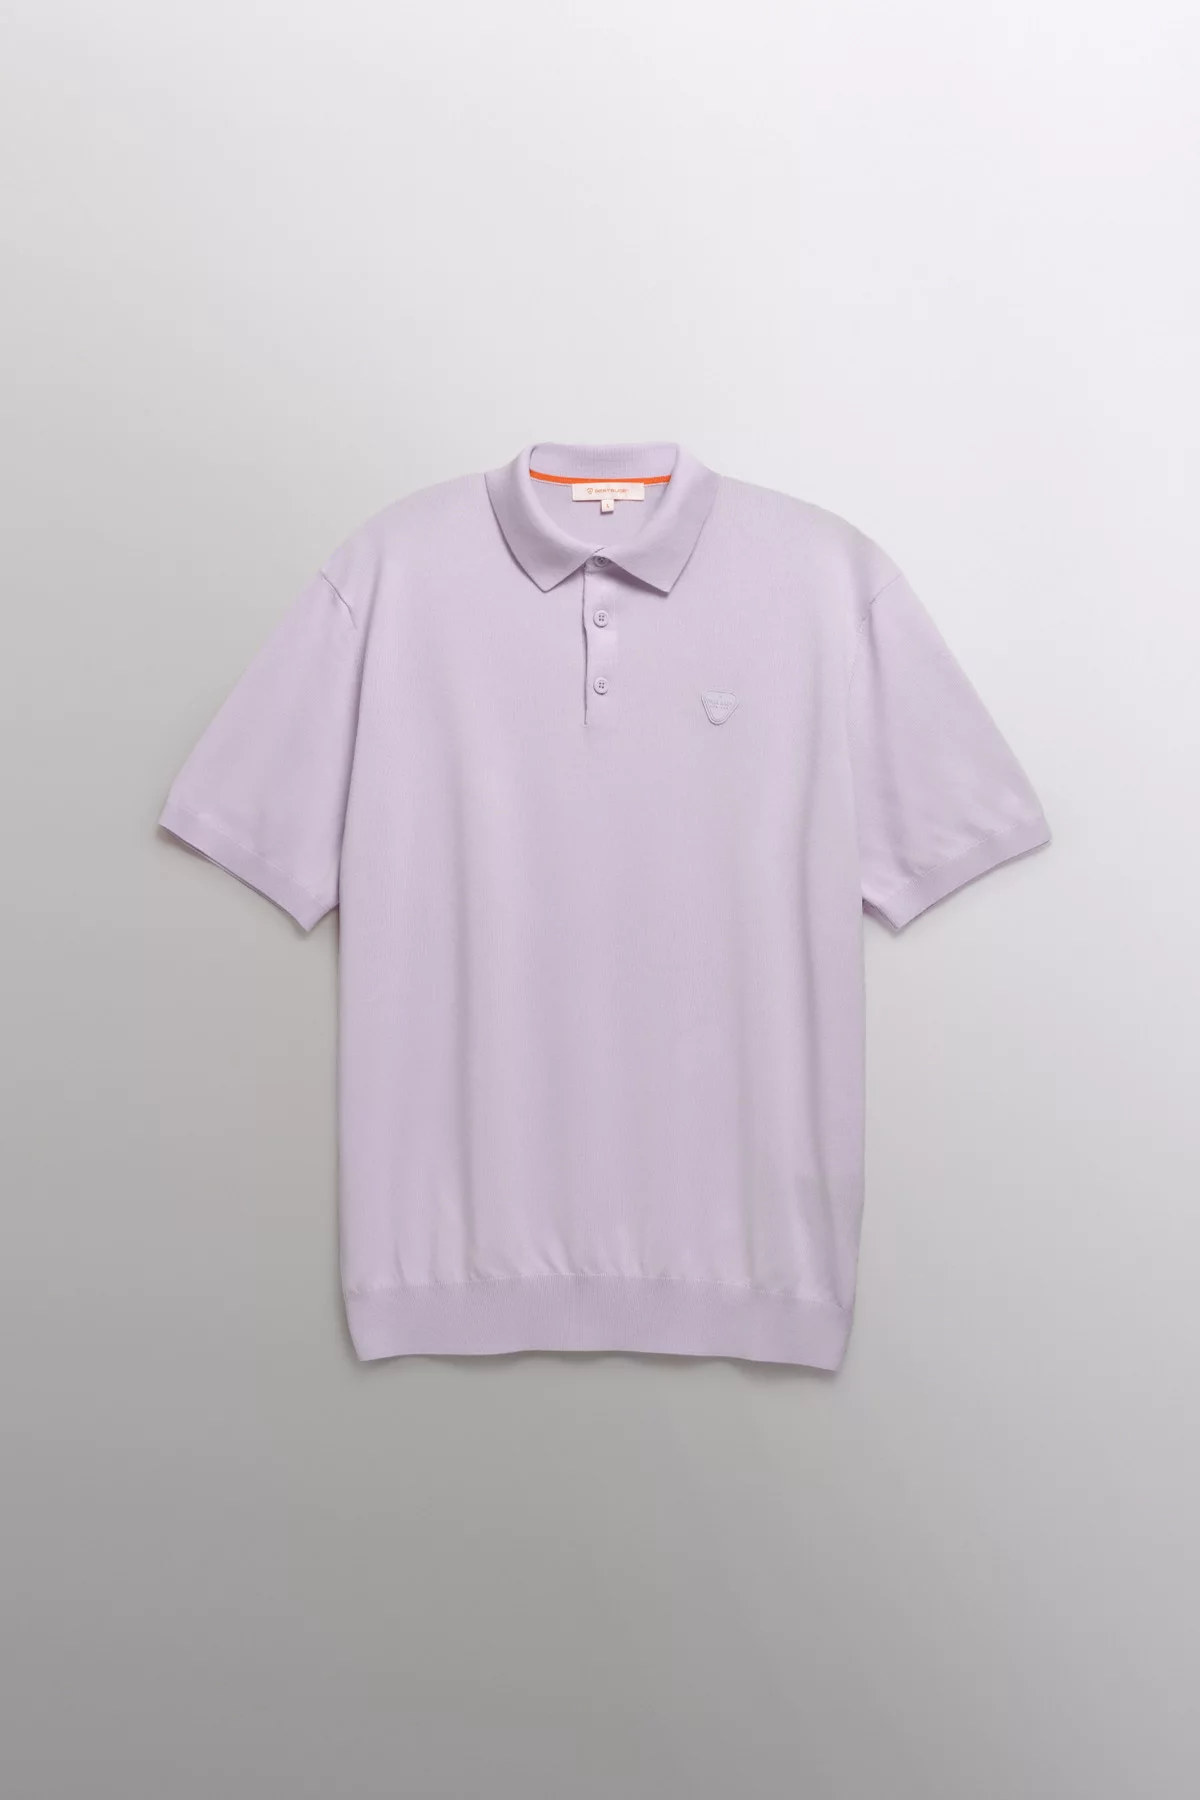 Jude short-sleeved lightweight knit polo shirt